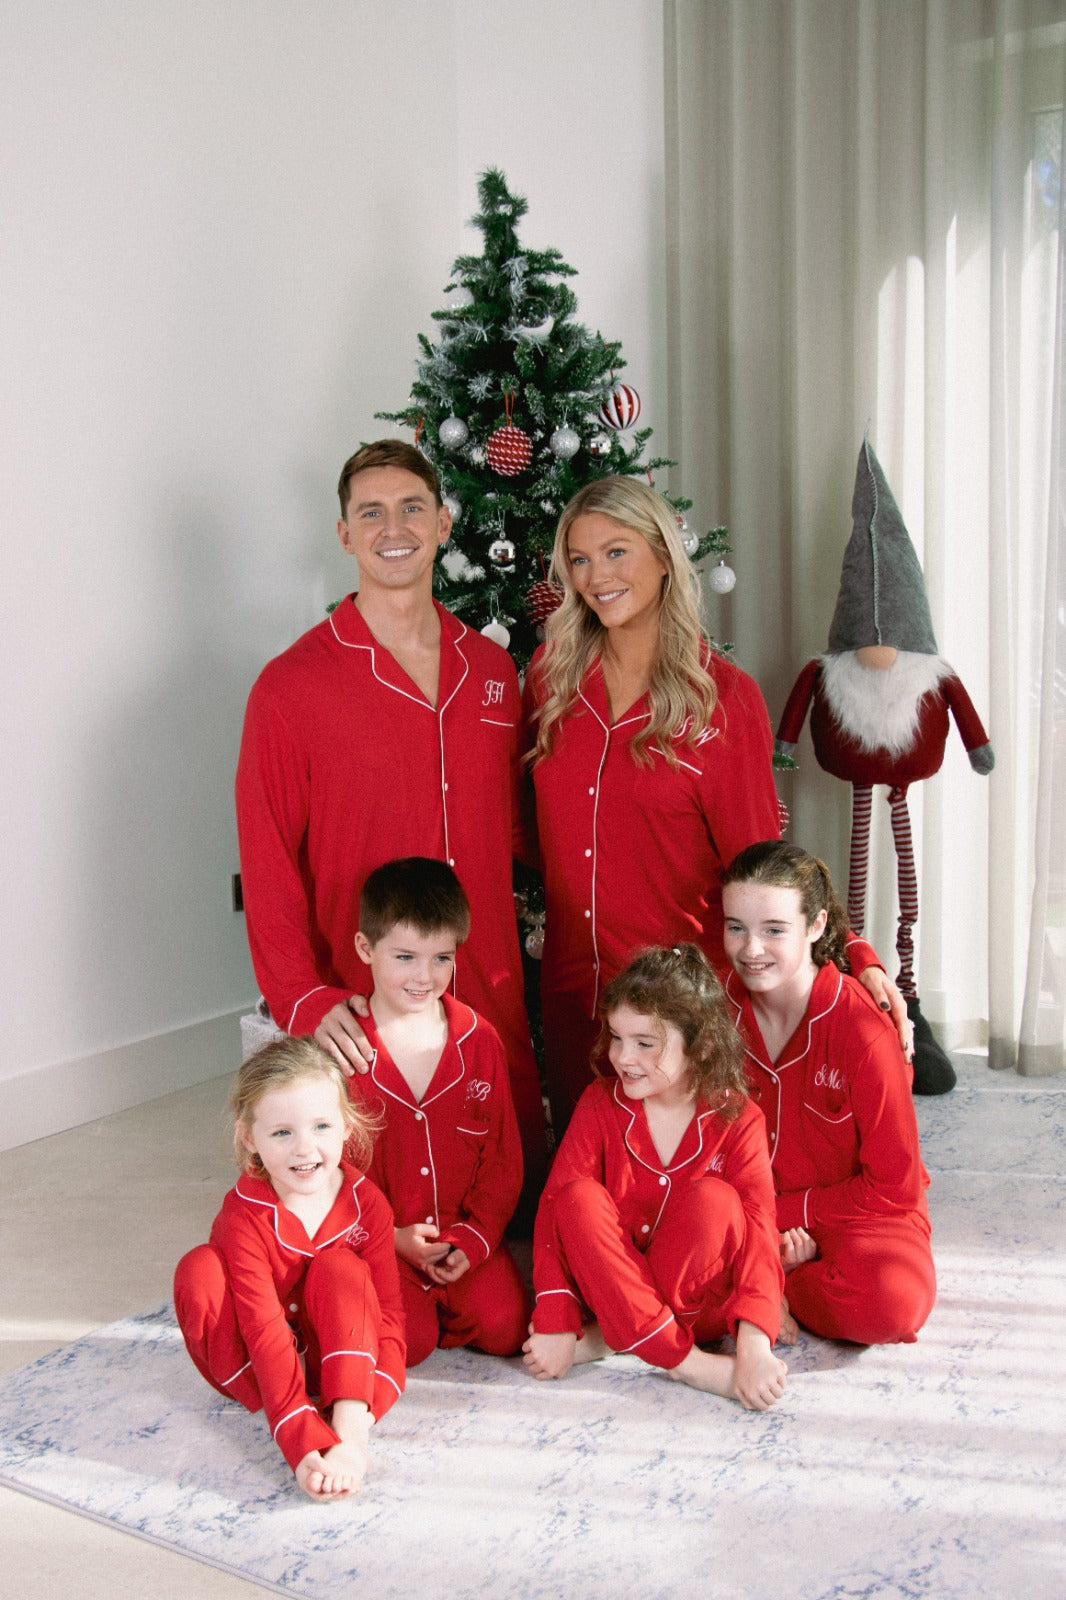 Ladies Christmas Pyjamas